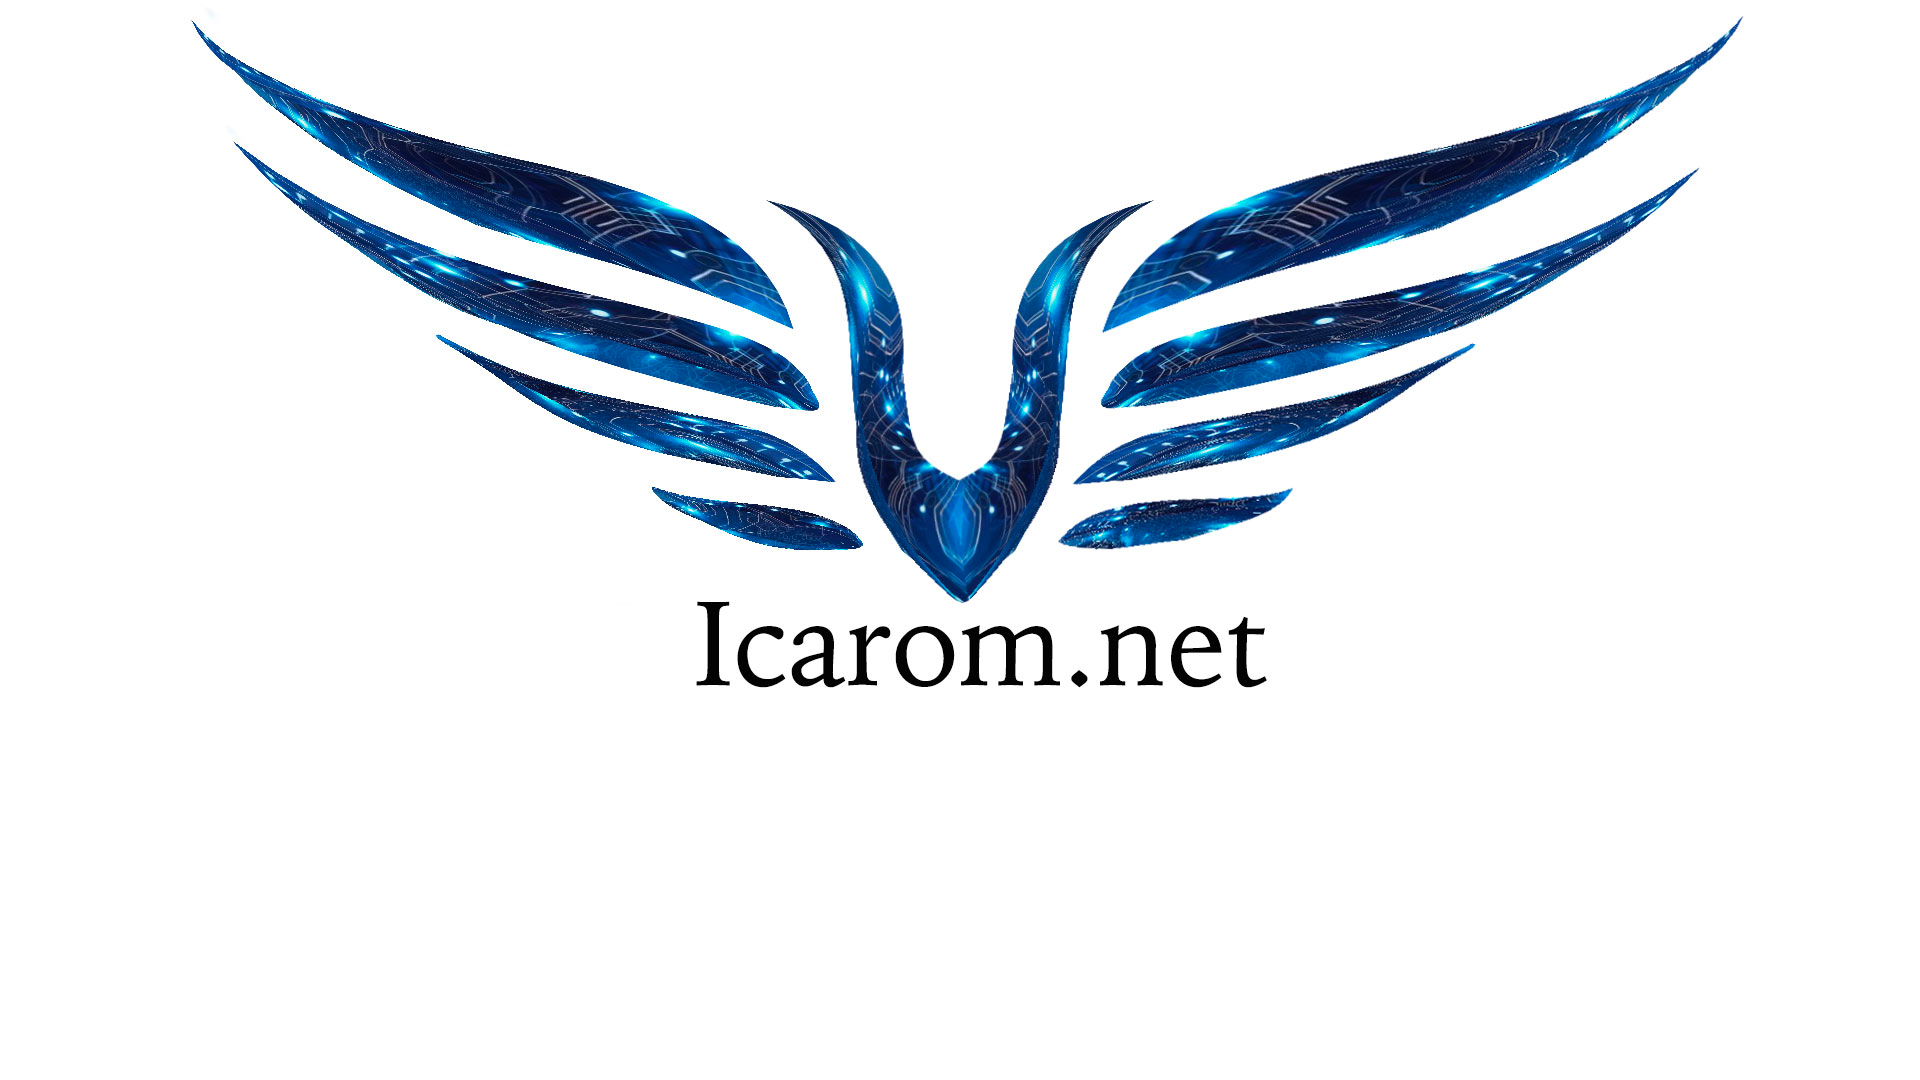 icarom.net